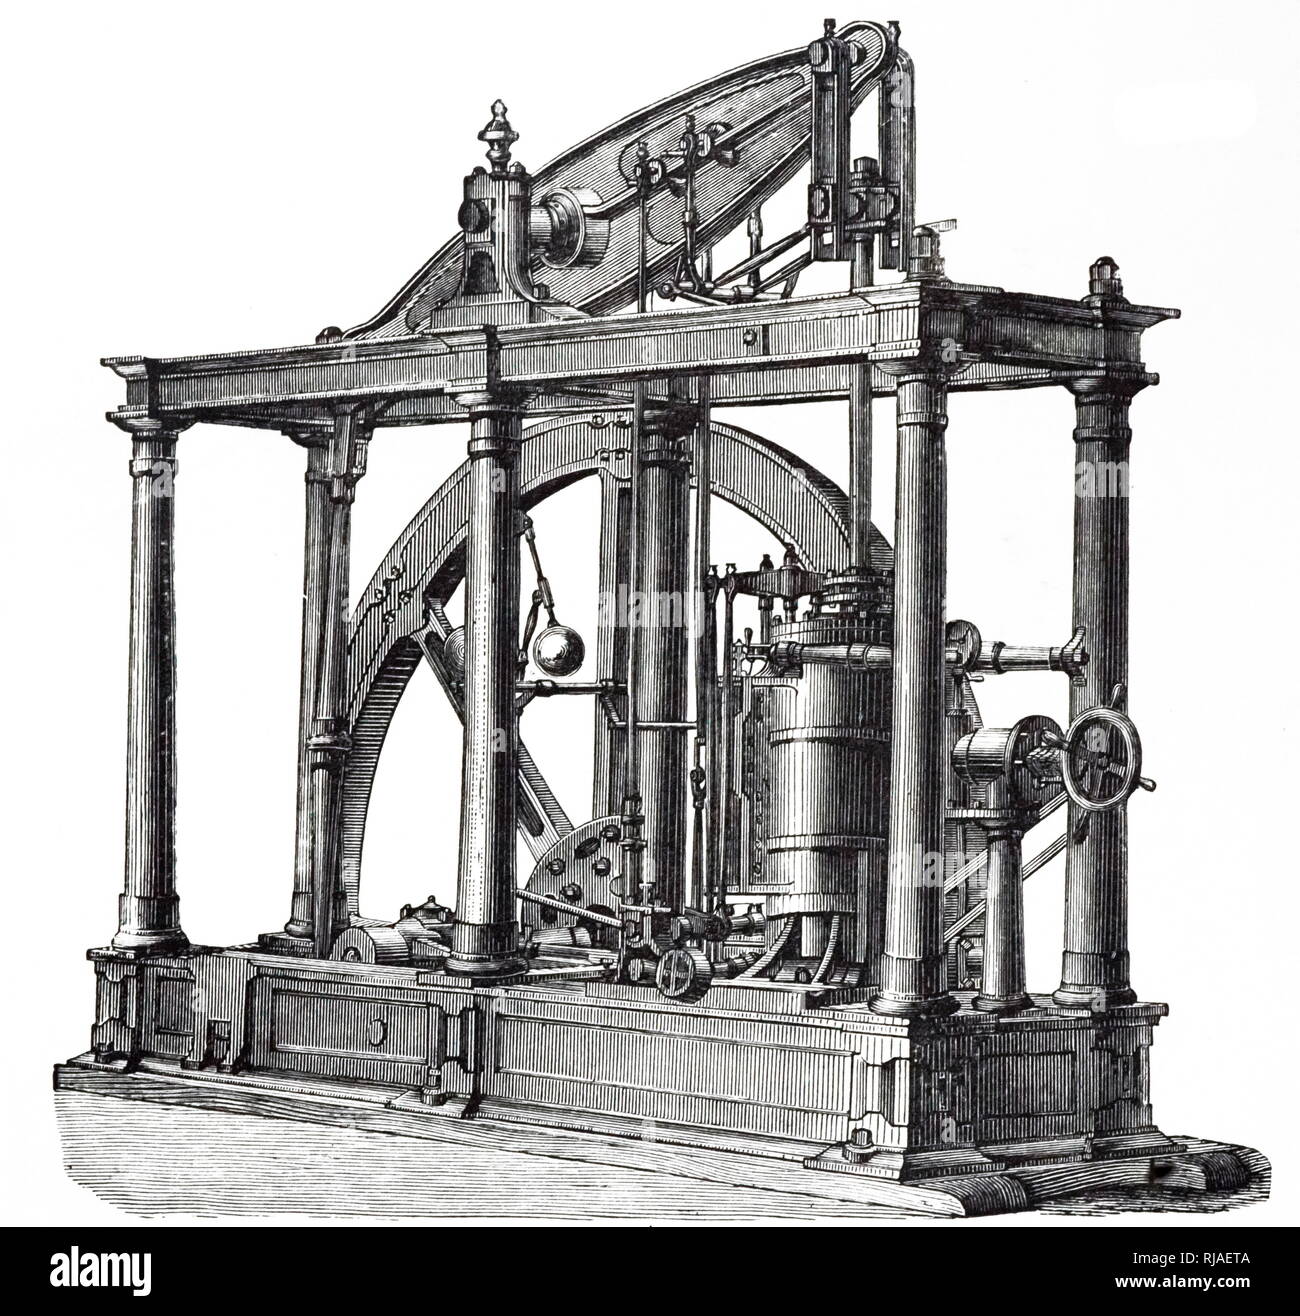 Ein kupferstich mit der Darstellung eines beam Engine, eine Art der Dampfmaschine, geeignet für Arbeiten Zuckerfabriken oder ähnliche schwere Maschinen. Vom 19. Jahrhundert Stockfoto